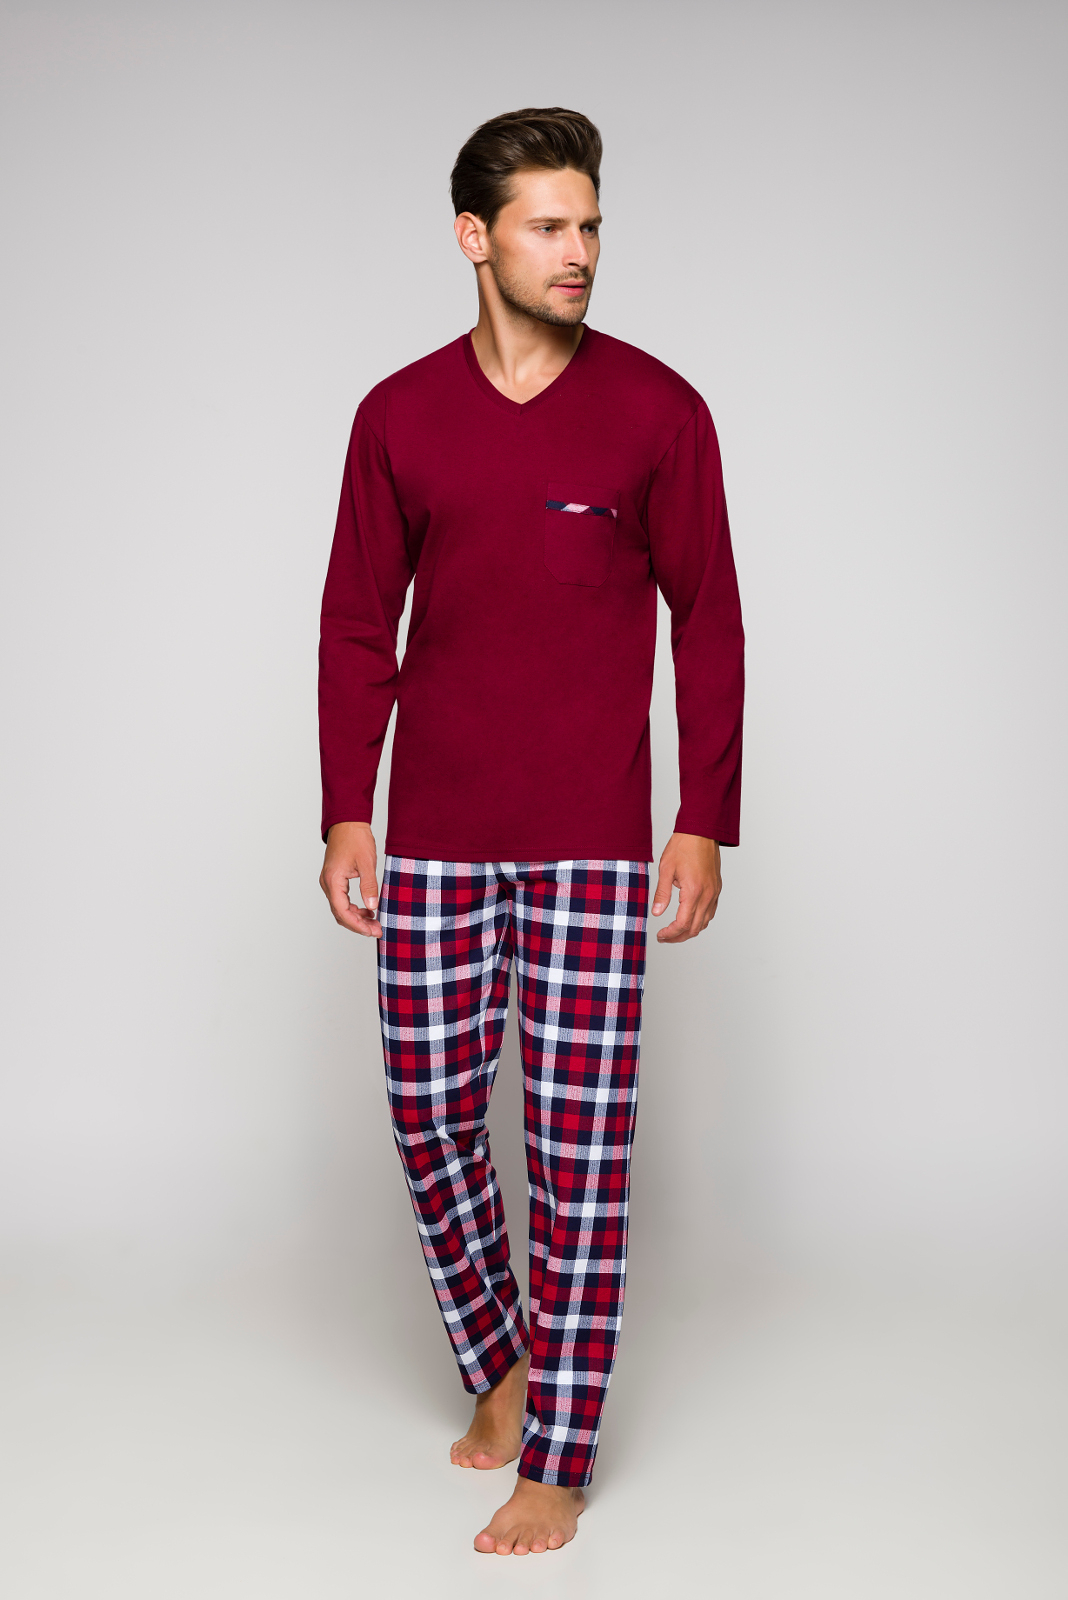 Pánské pyžamo Regina 528 dl/r M-XL - Světlá